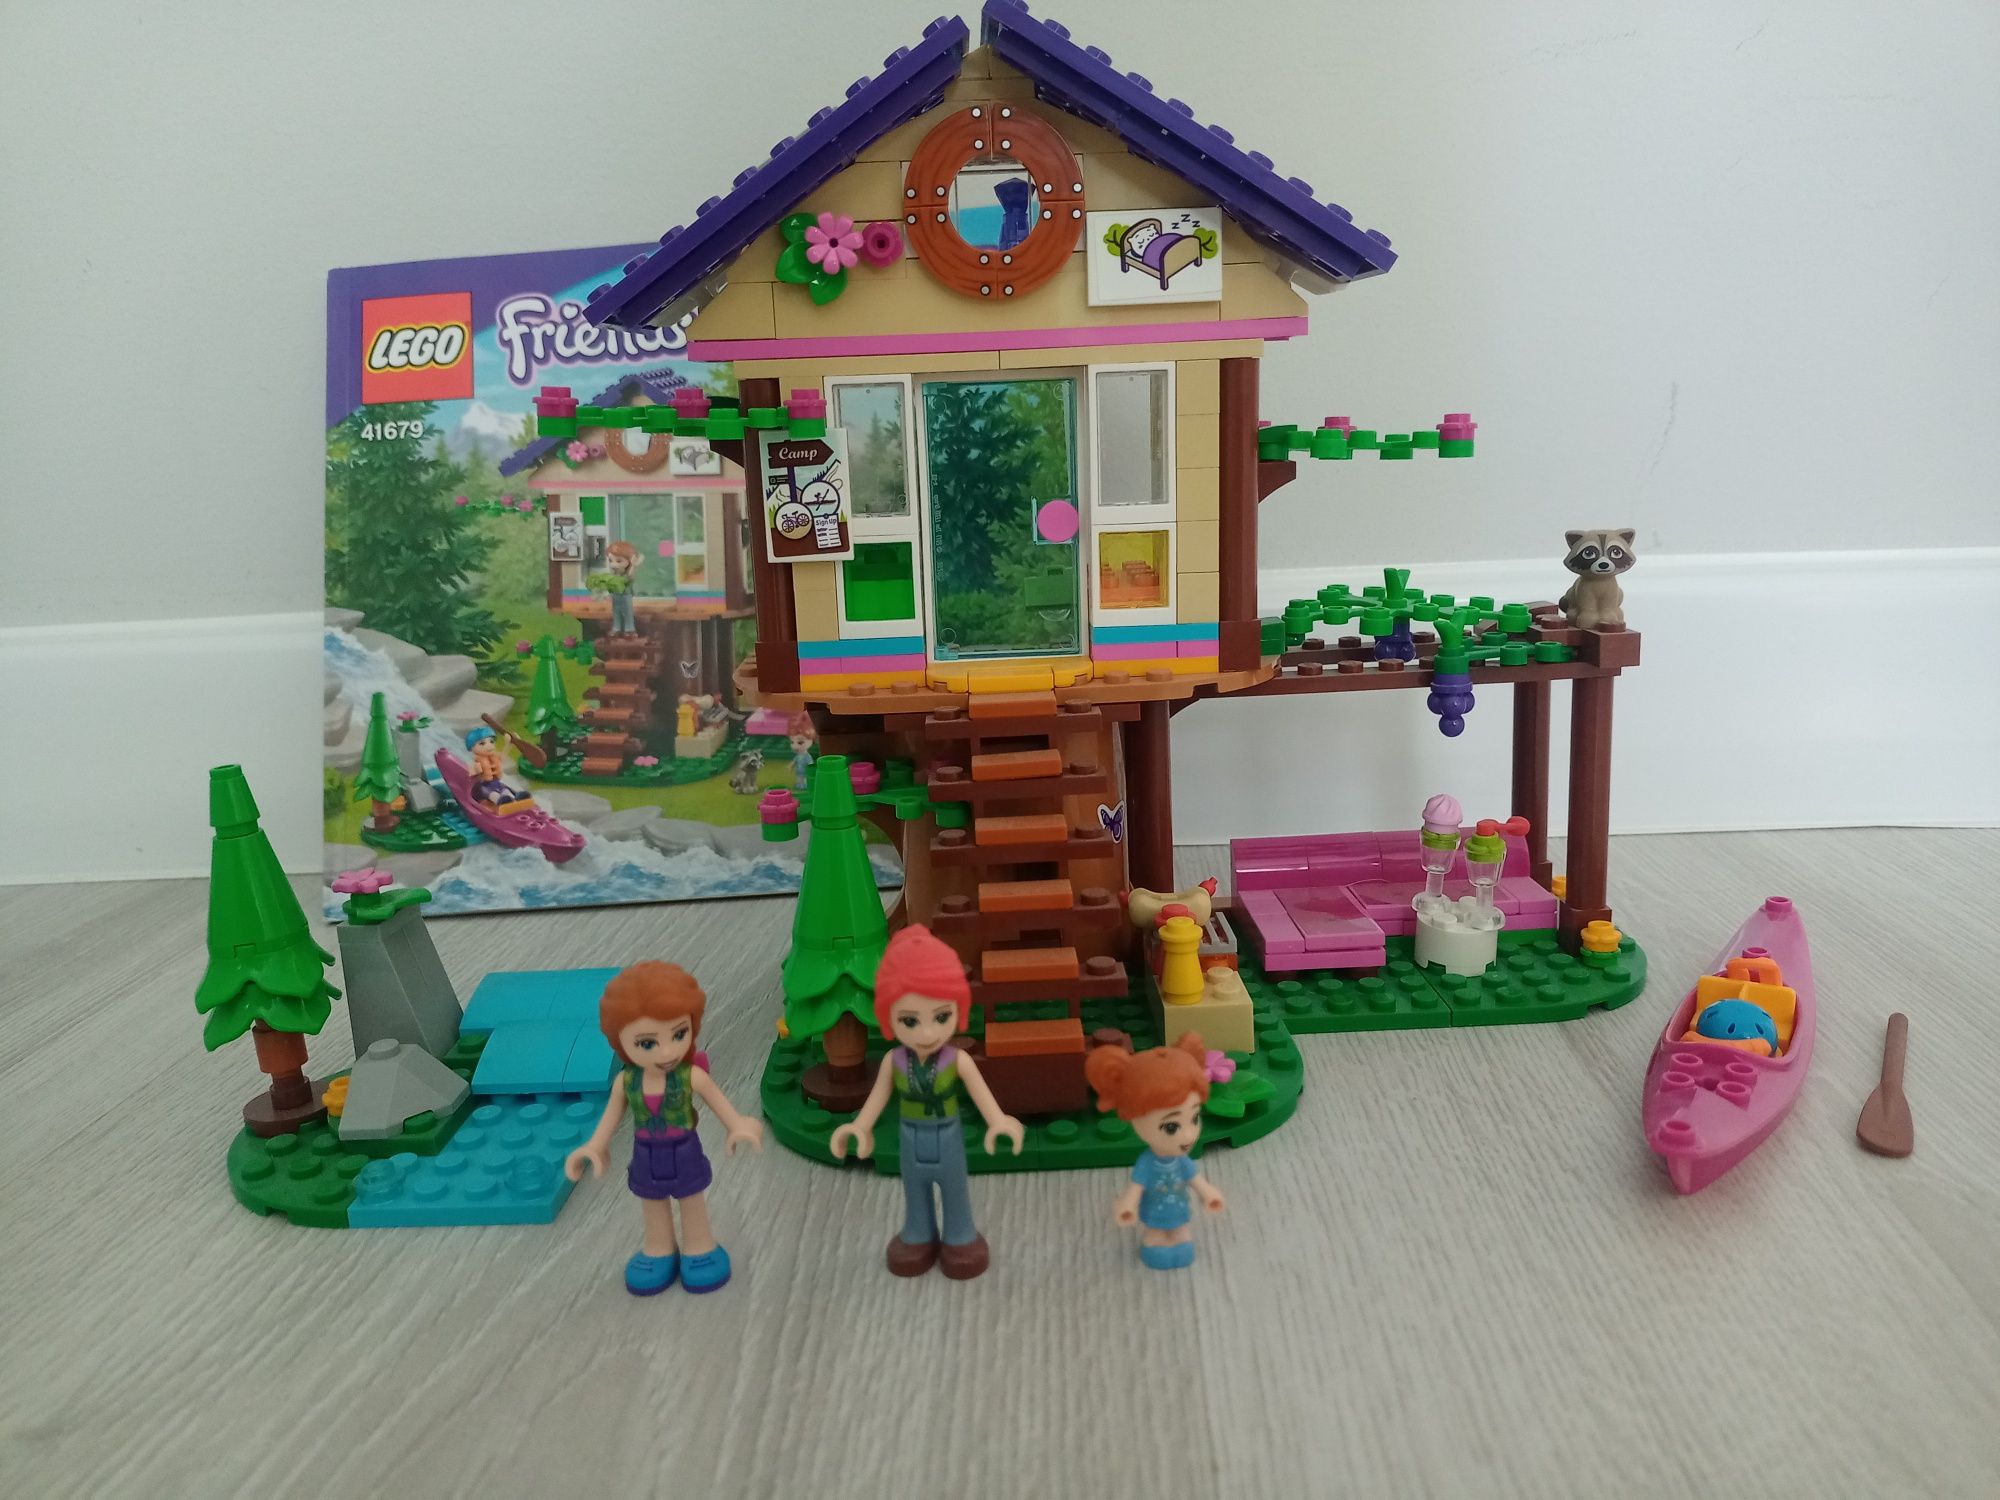 LEGO friends 41679 domek na drzewie